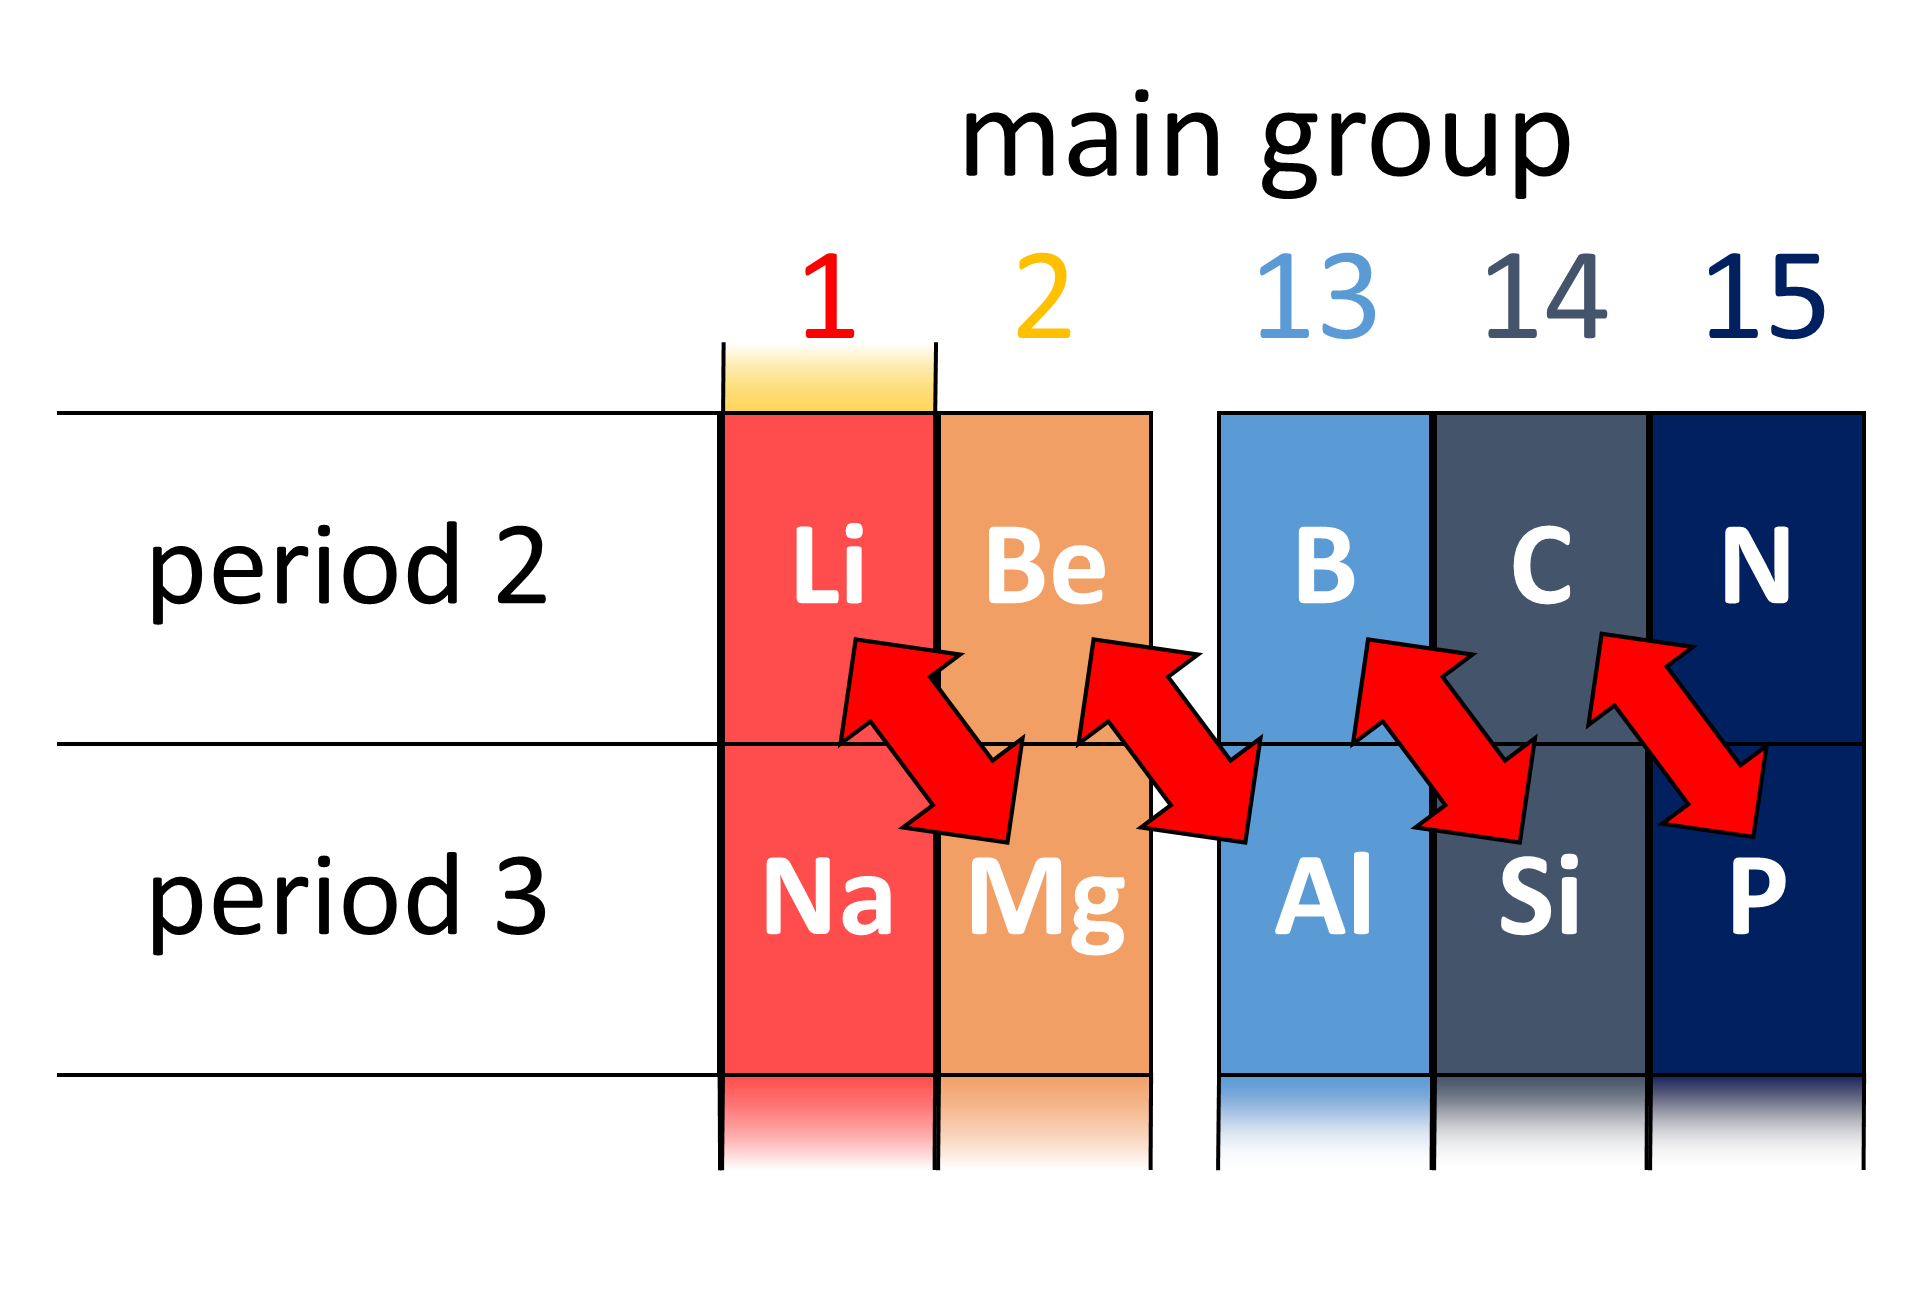 Schema che mostra la somiglianza diagonale tra periodi diversi